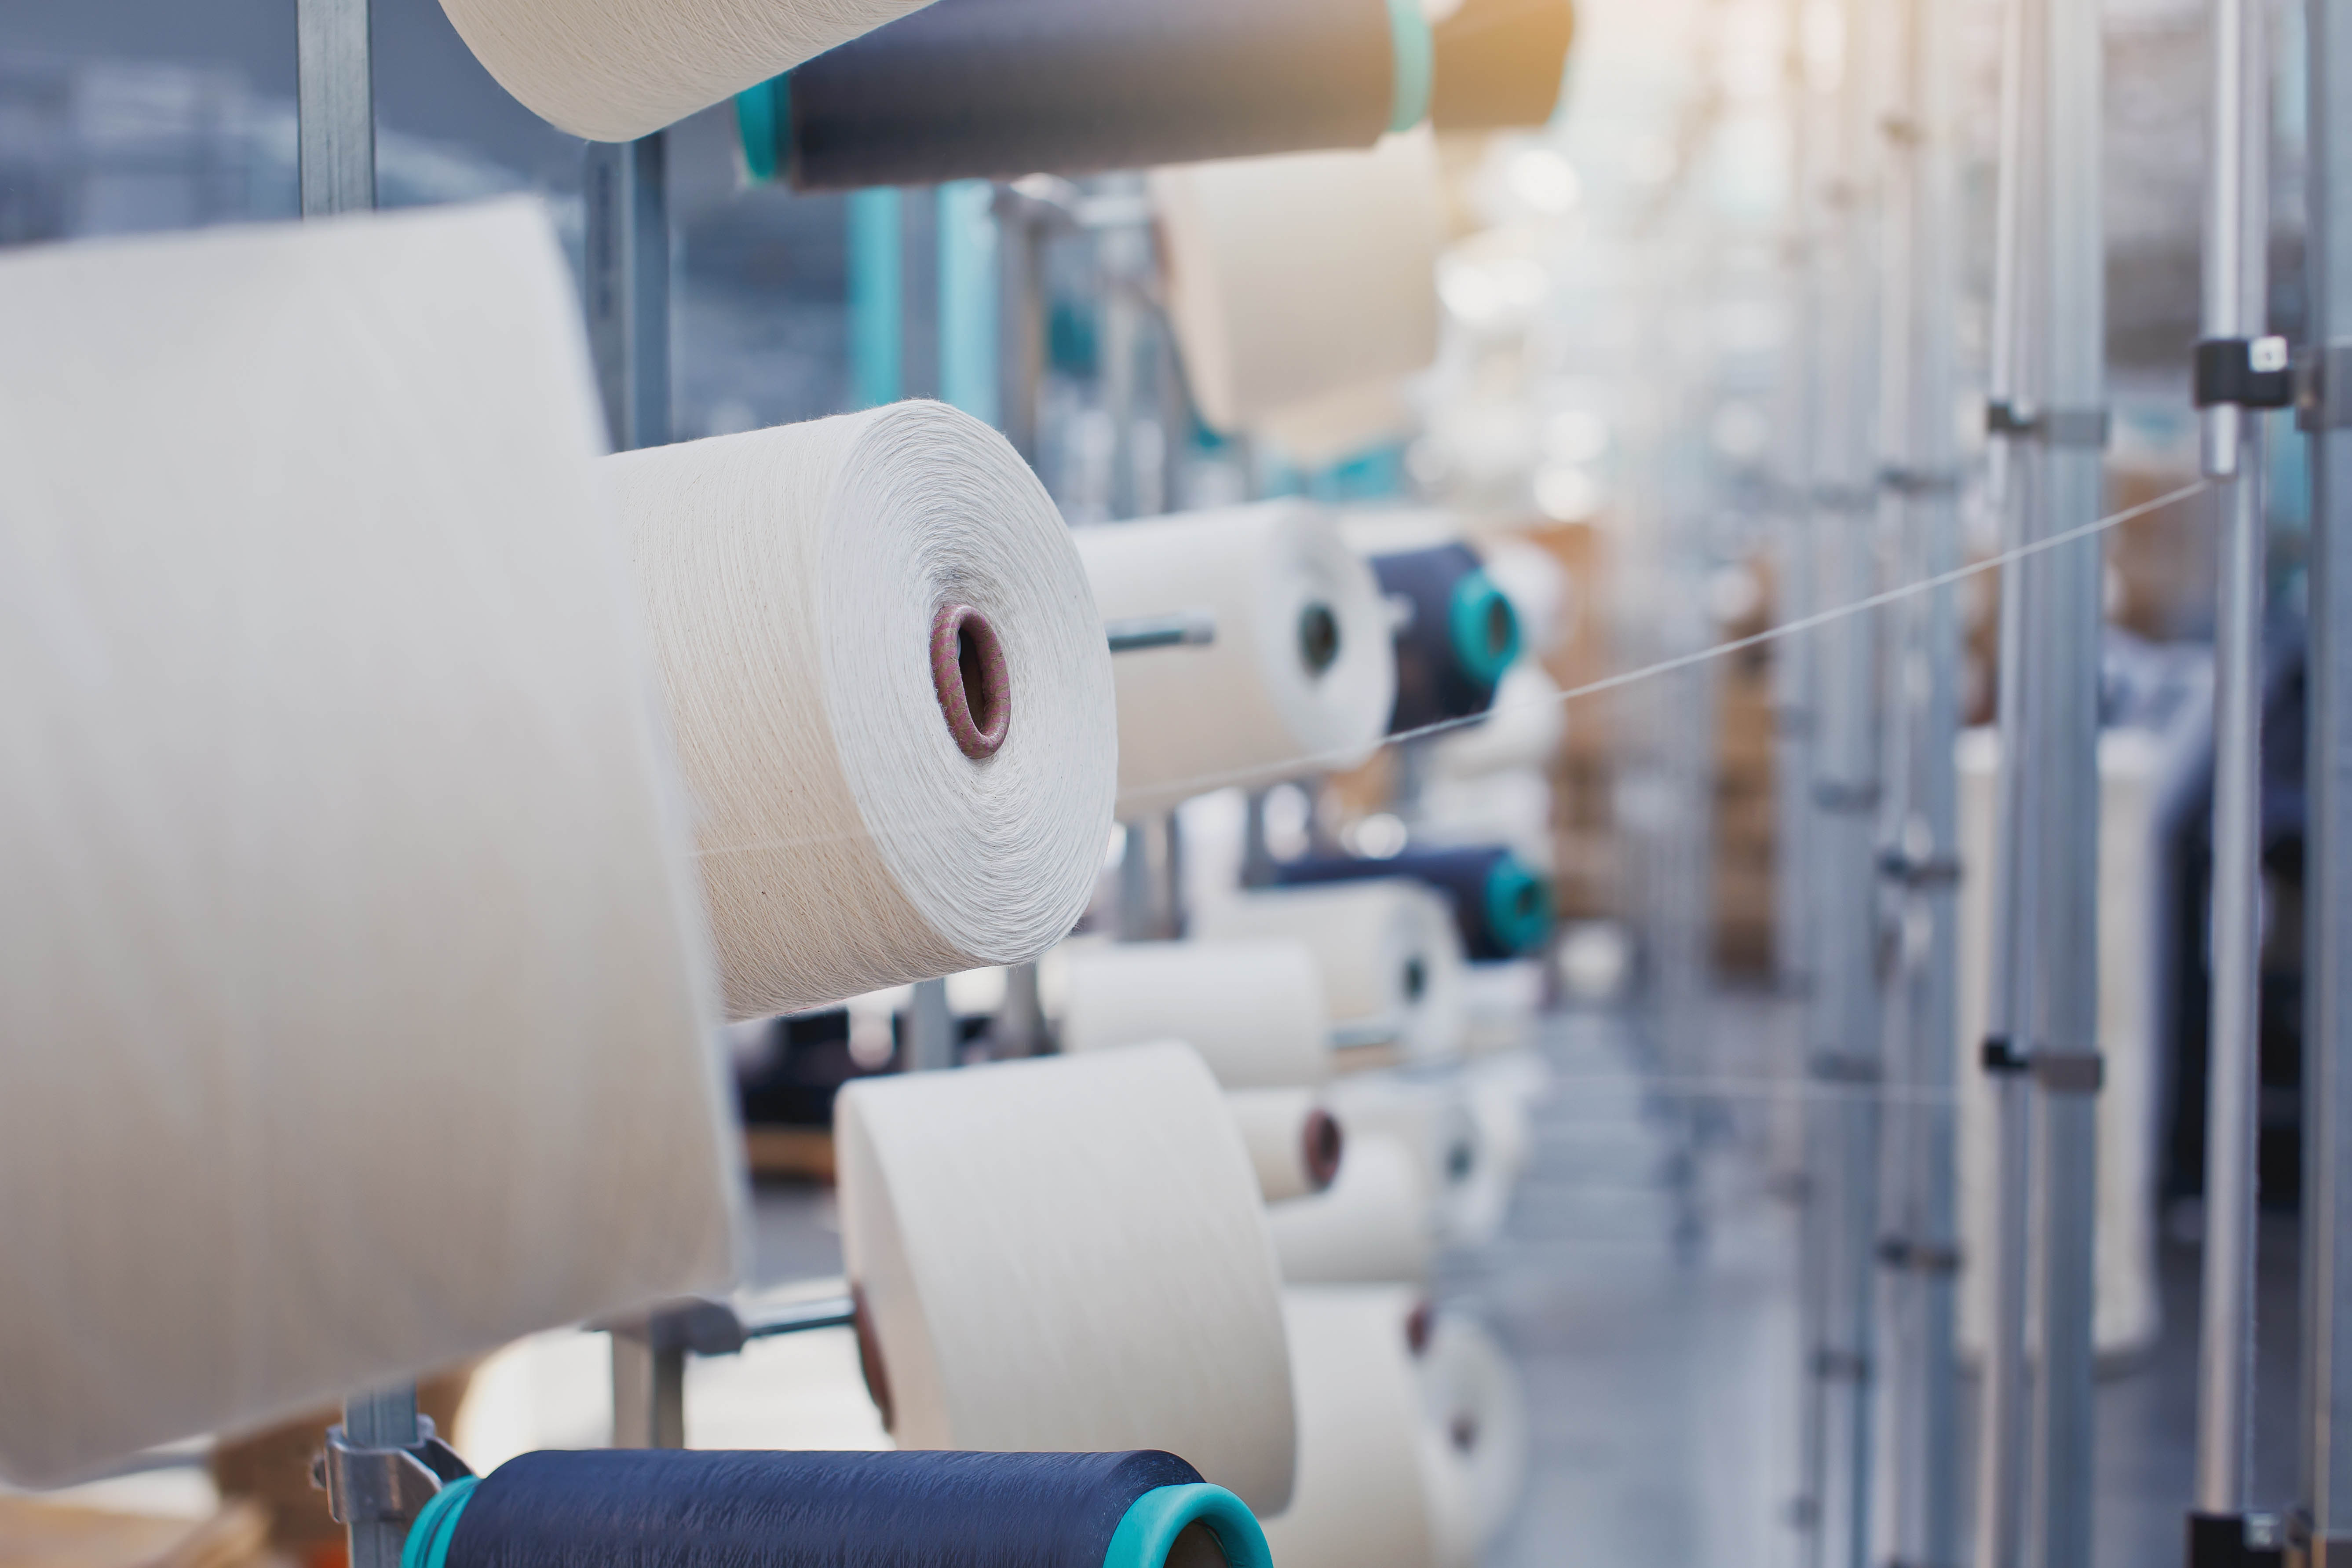 Fabricación Téxtil.Tecido de punto circular.Fábrica téxtil na liña de produción de fiación e unha empresa de produción de maquinaria e equipamento rotativo.Industria da confección.Fabricación de tecidos téxtiles.